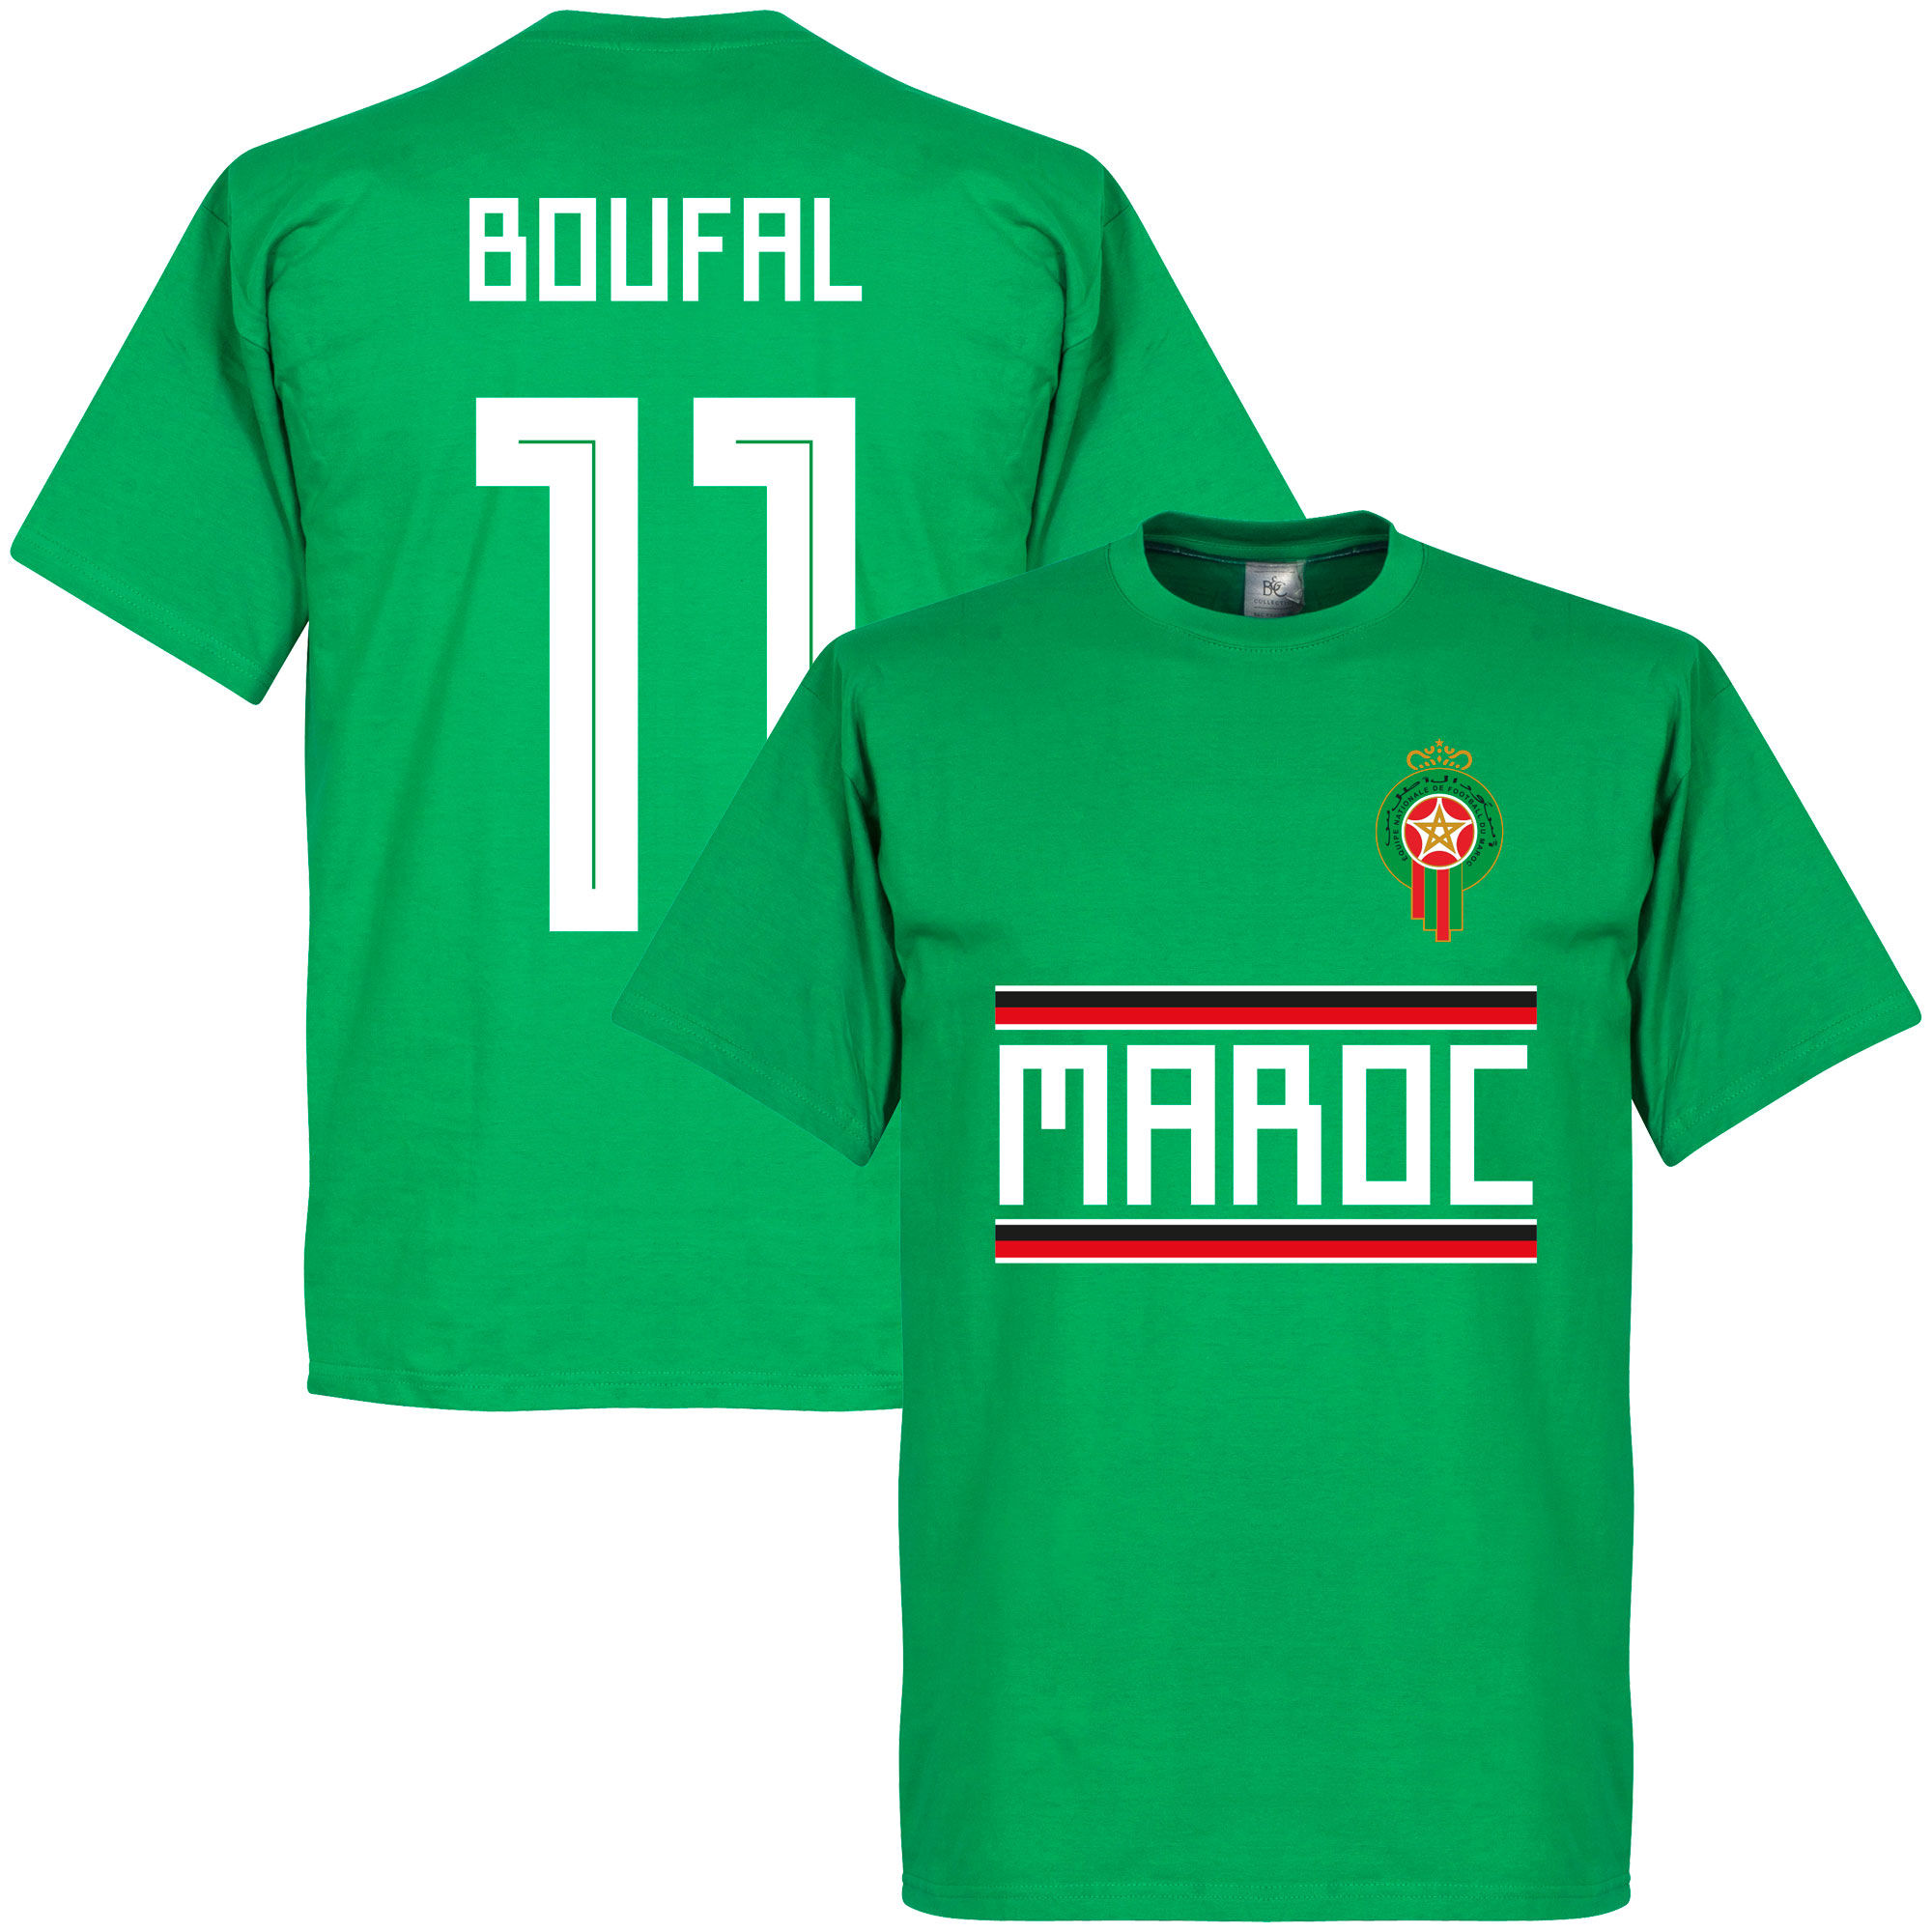 Maroko - Tričko - Sofiane Boufal, zelené, číslo 11